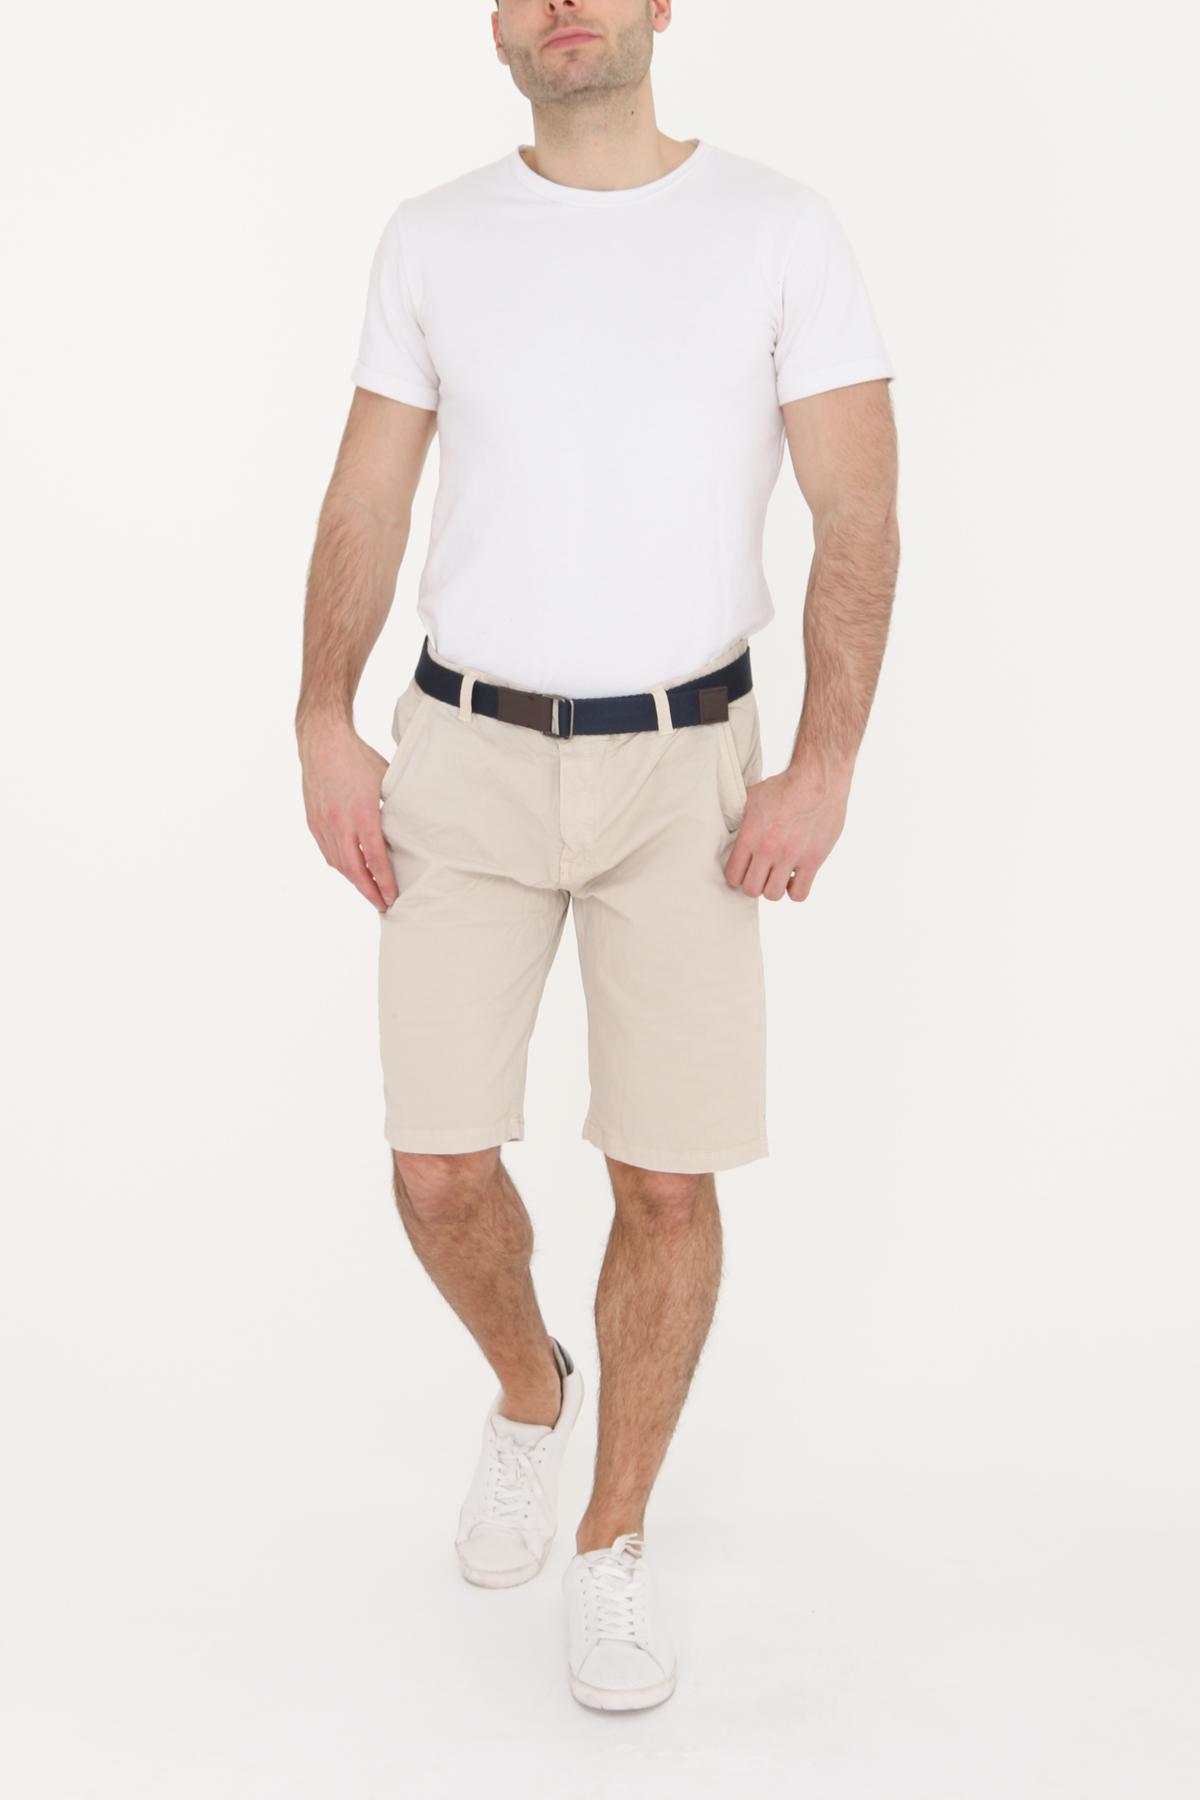 Bermuda beige regular poches & ceinture Kaygo - LPCH06